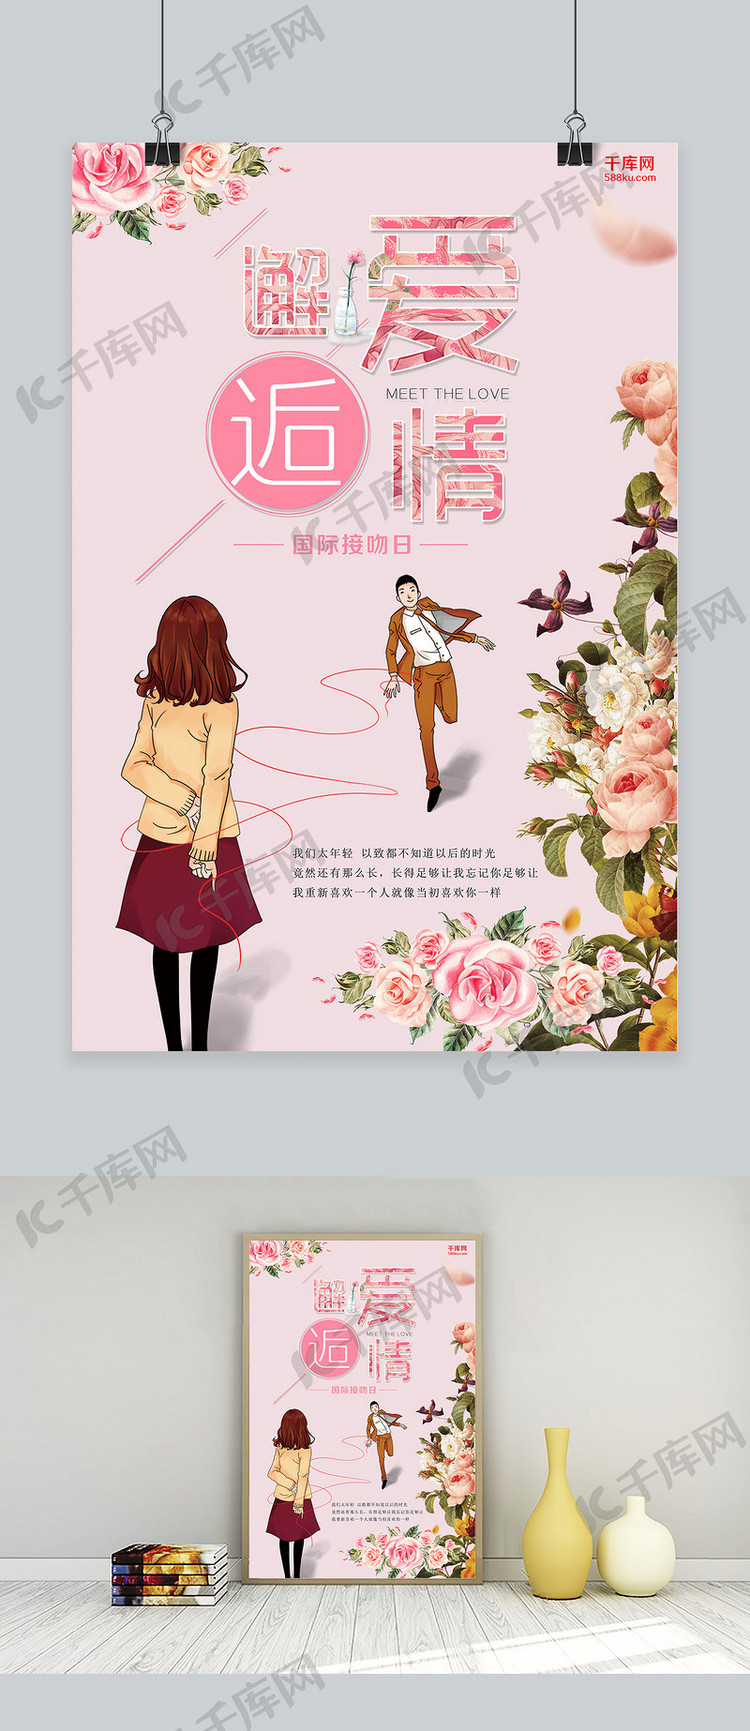 千库网原创国际接吻日粉色海报